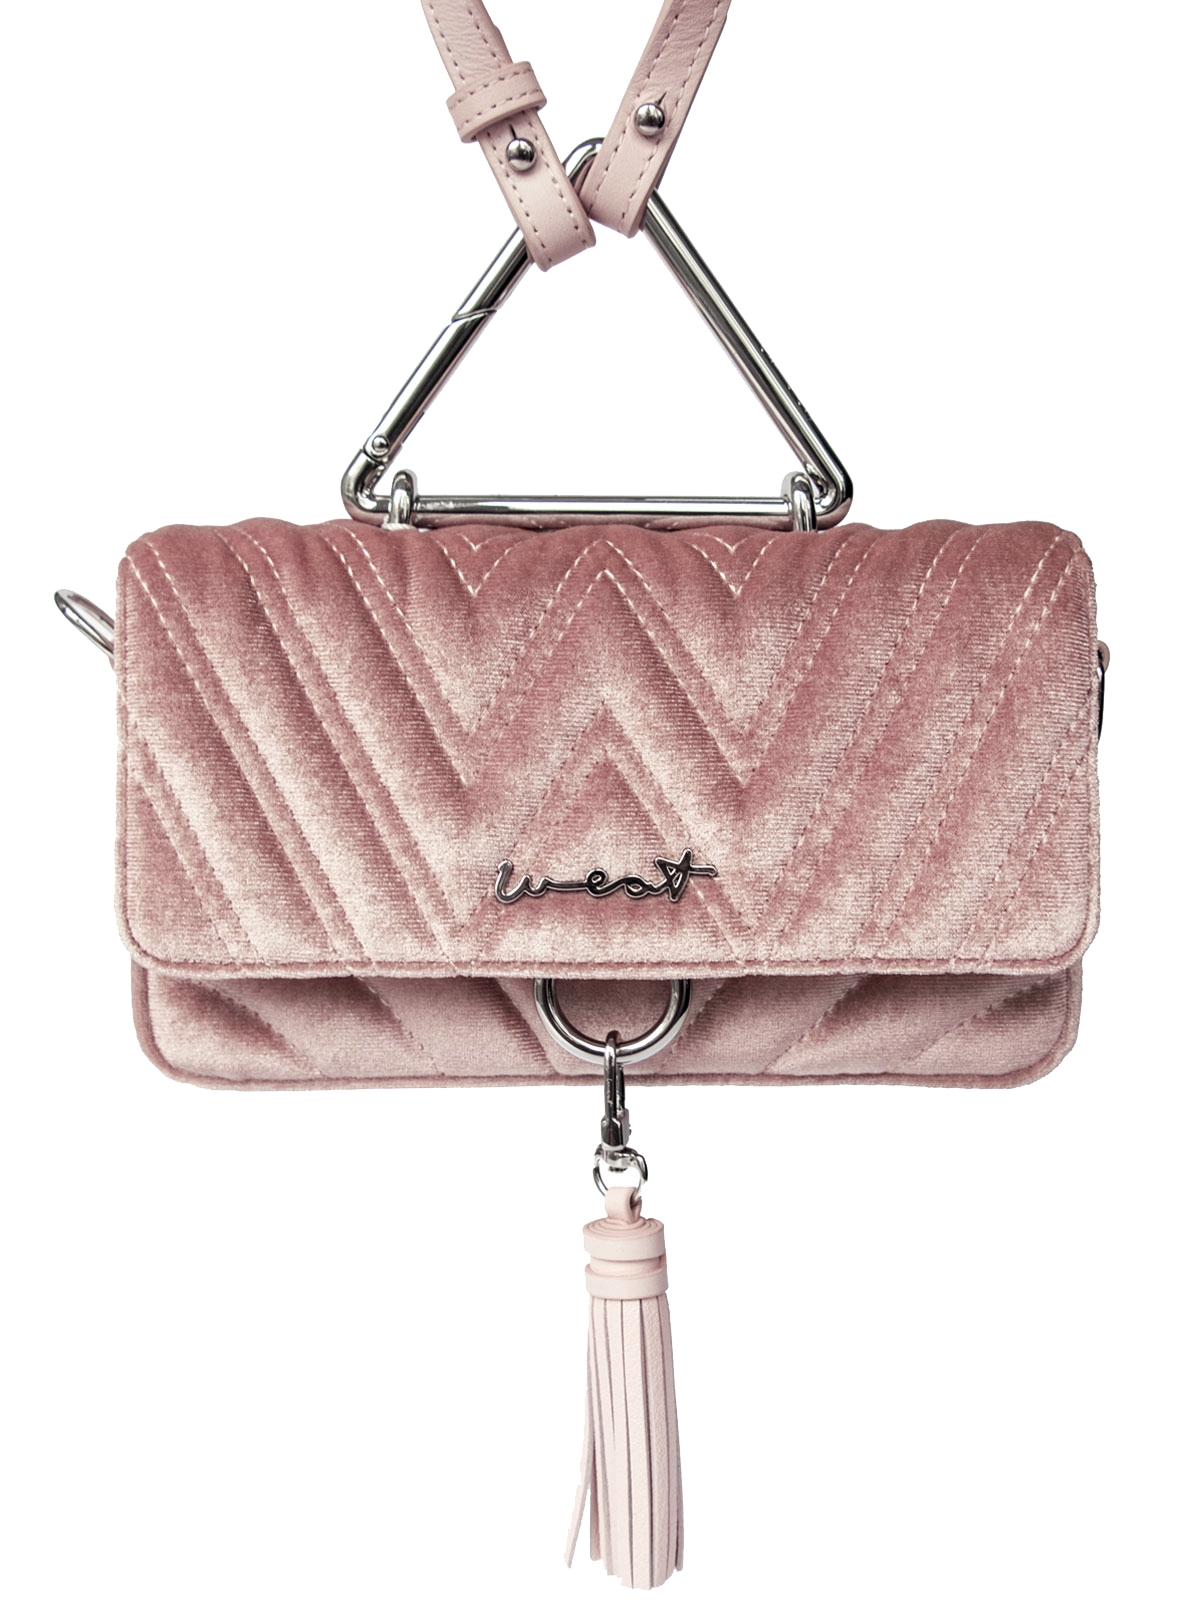 Rosa-farbene Samt-Tasche mit silbernen Details